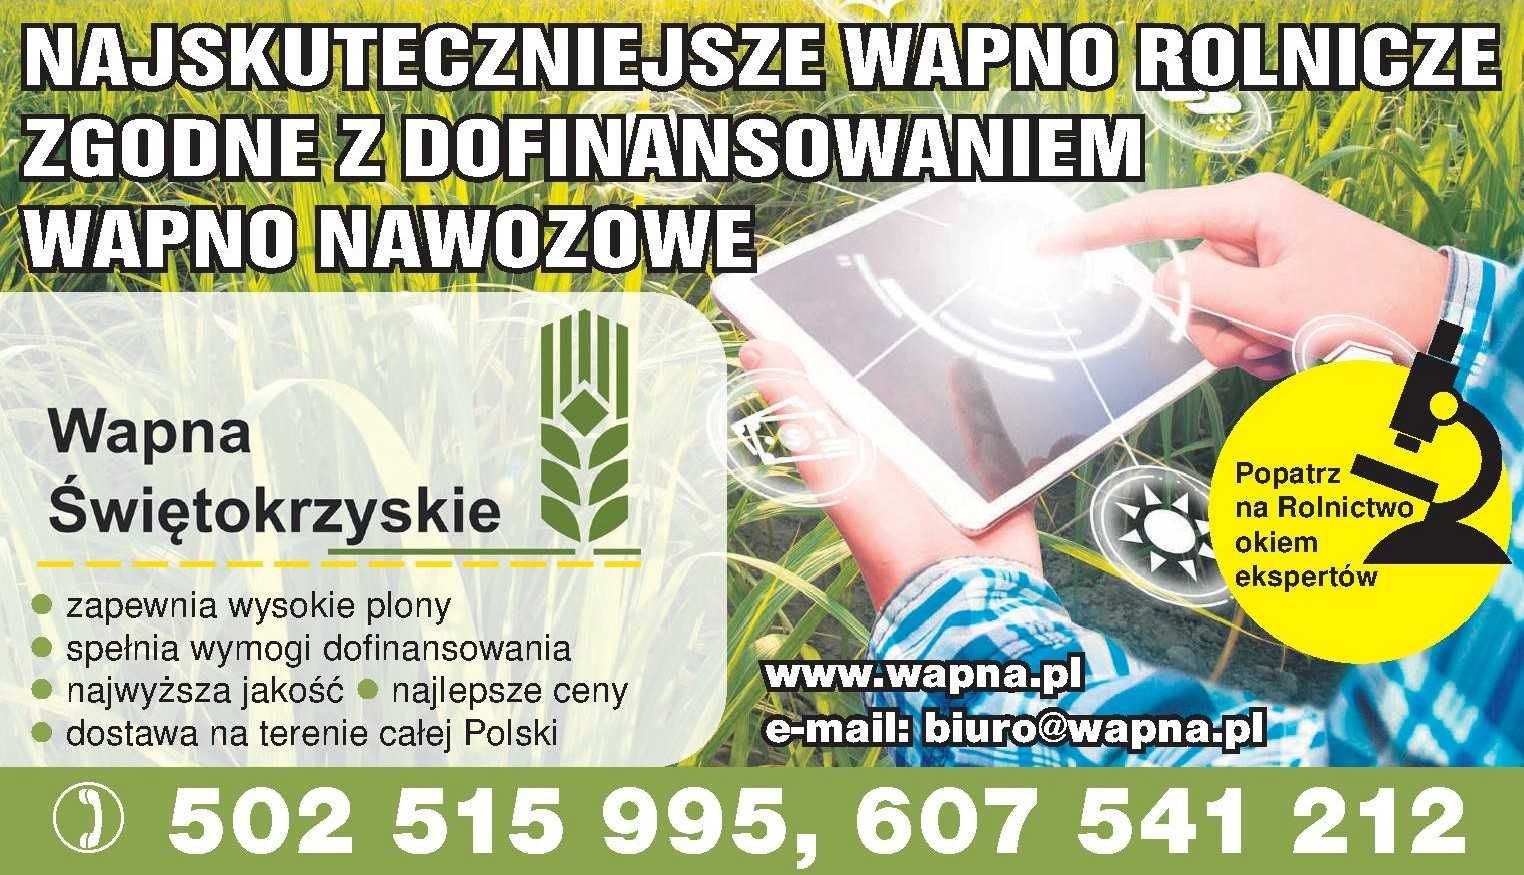 Wapno nawozowe Węglanowe, Tlenkowe,Magnezowe, Kreda-dostaw cała Polska